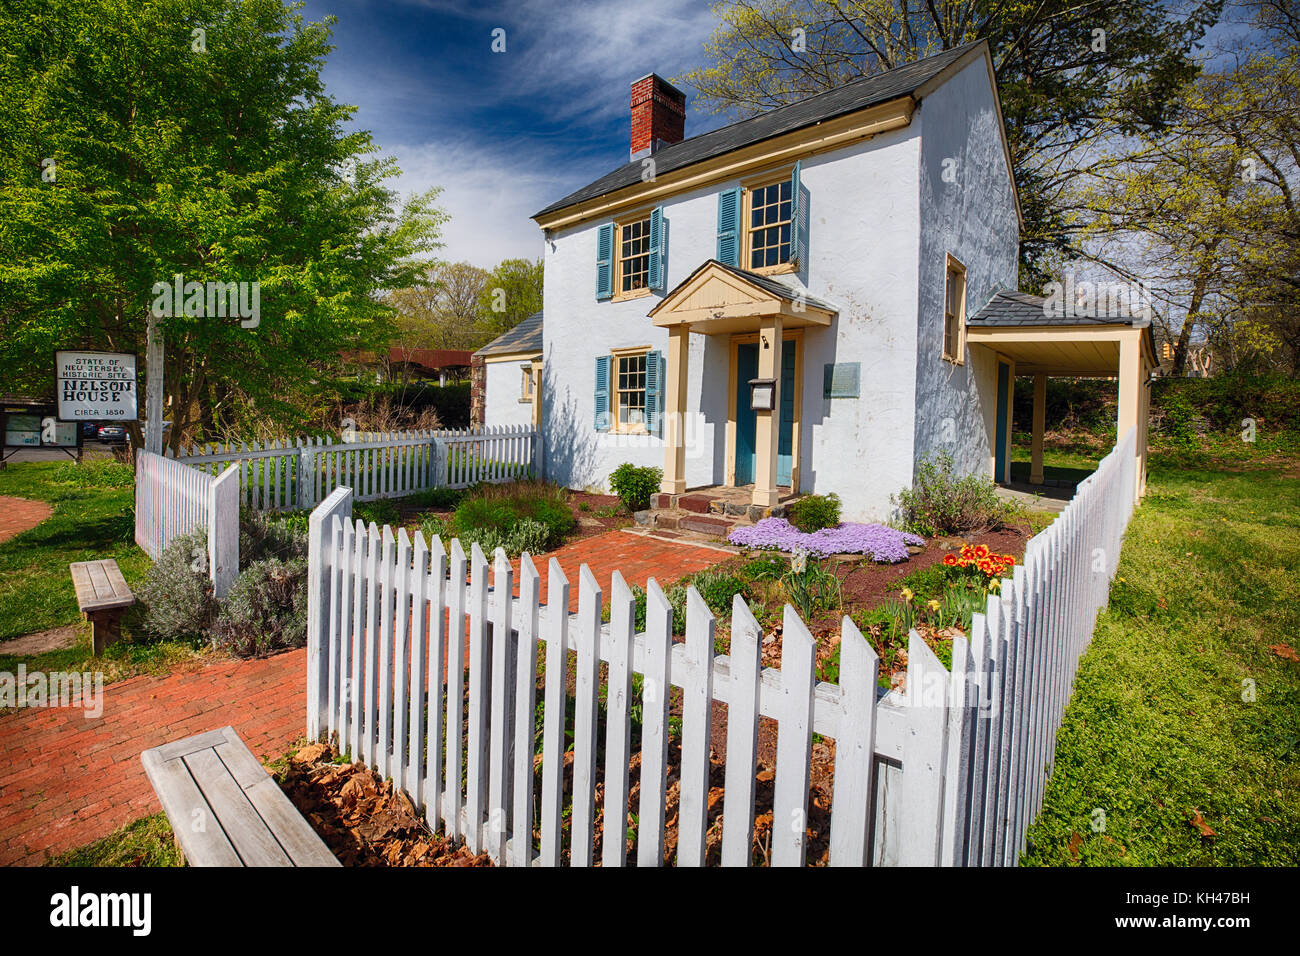 Blick auf die historische Nelson Haus in Washington Crossing State Park, Titusville, New Jersey Stockfoto